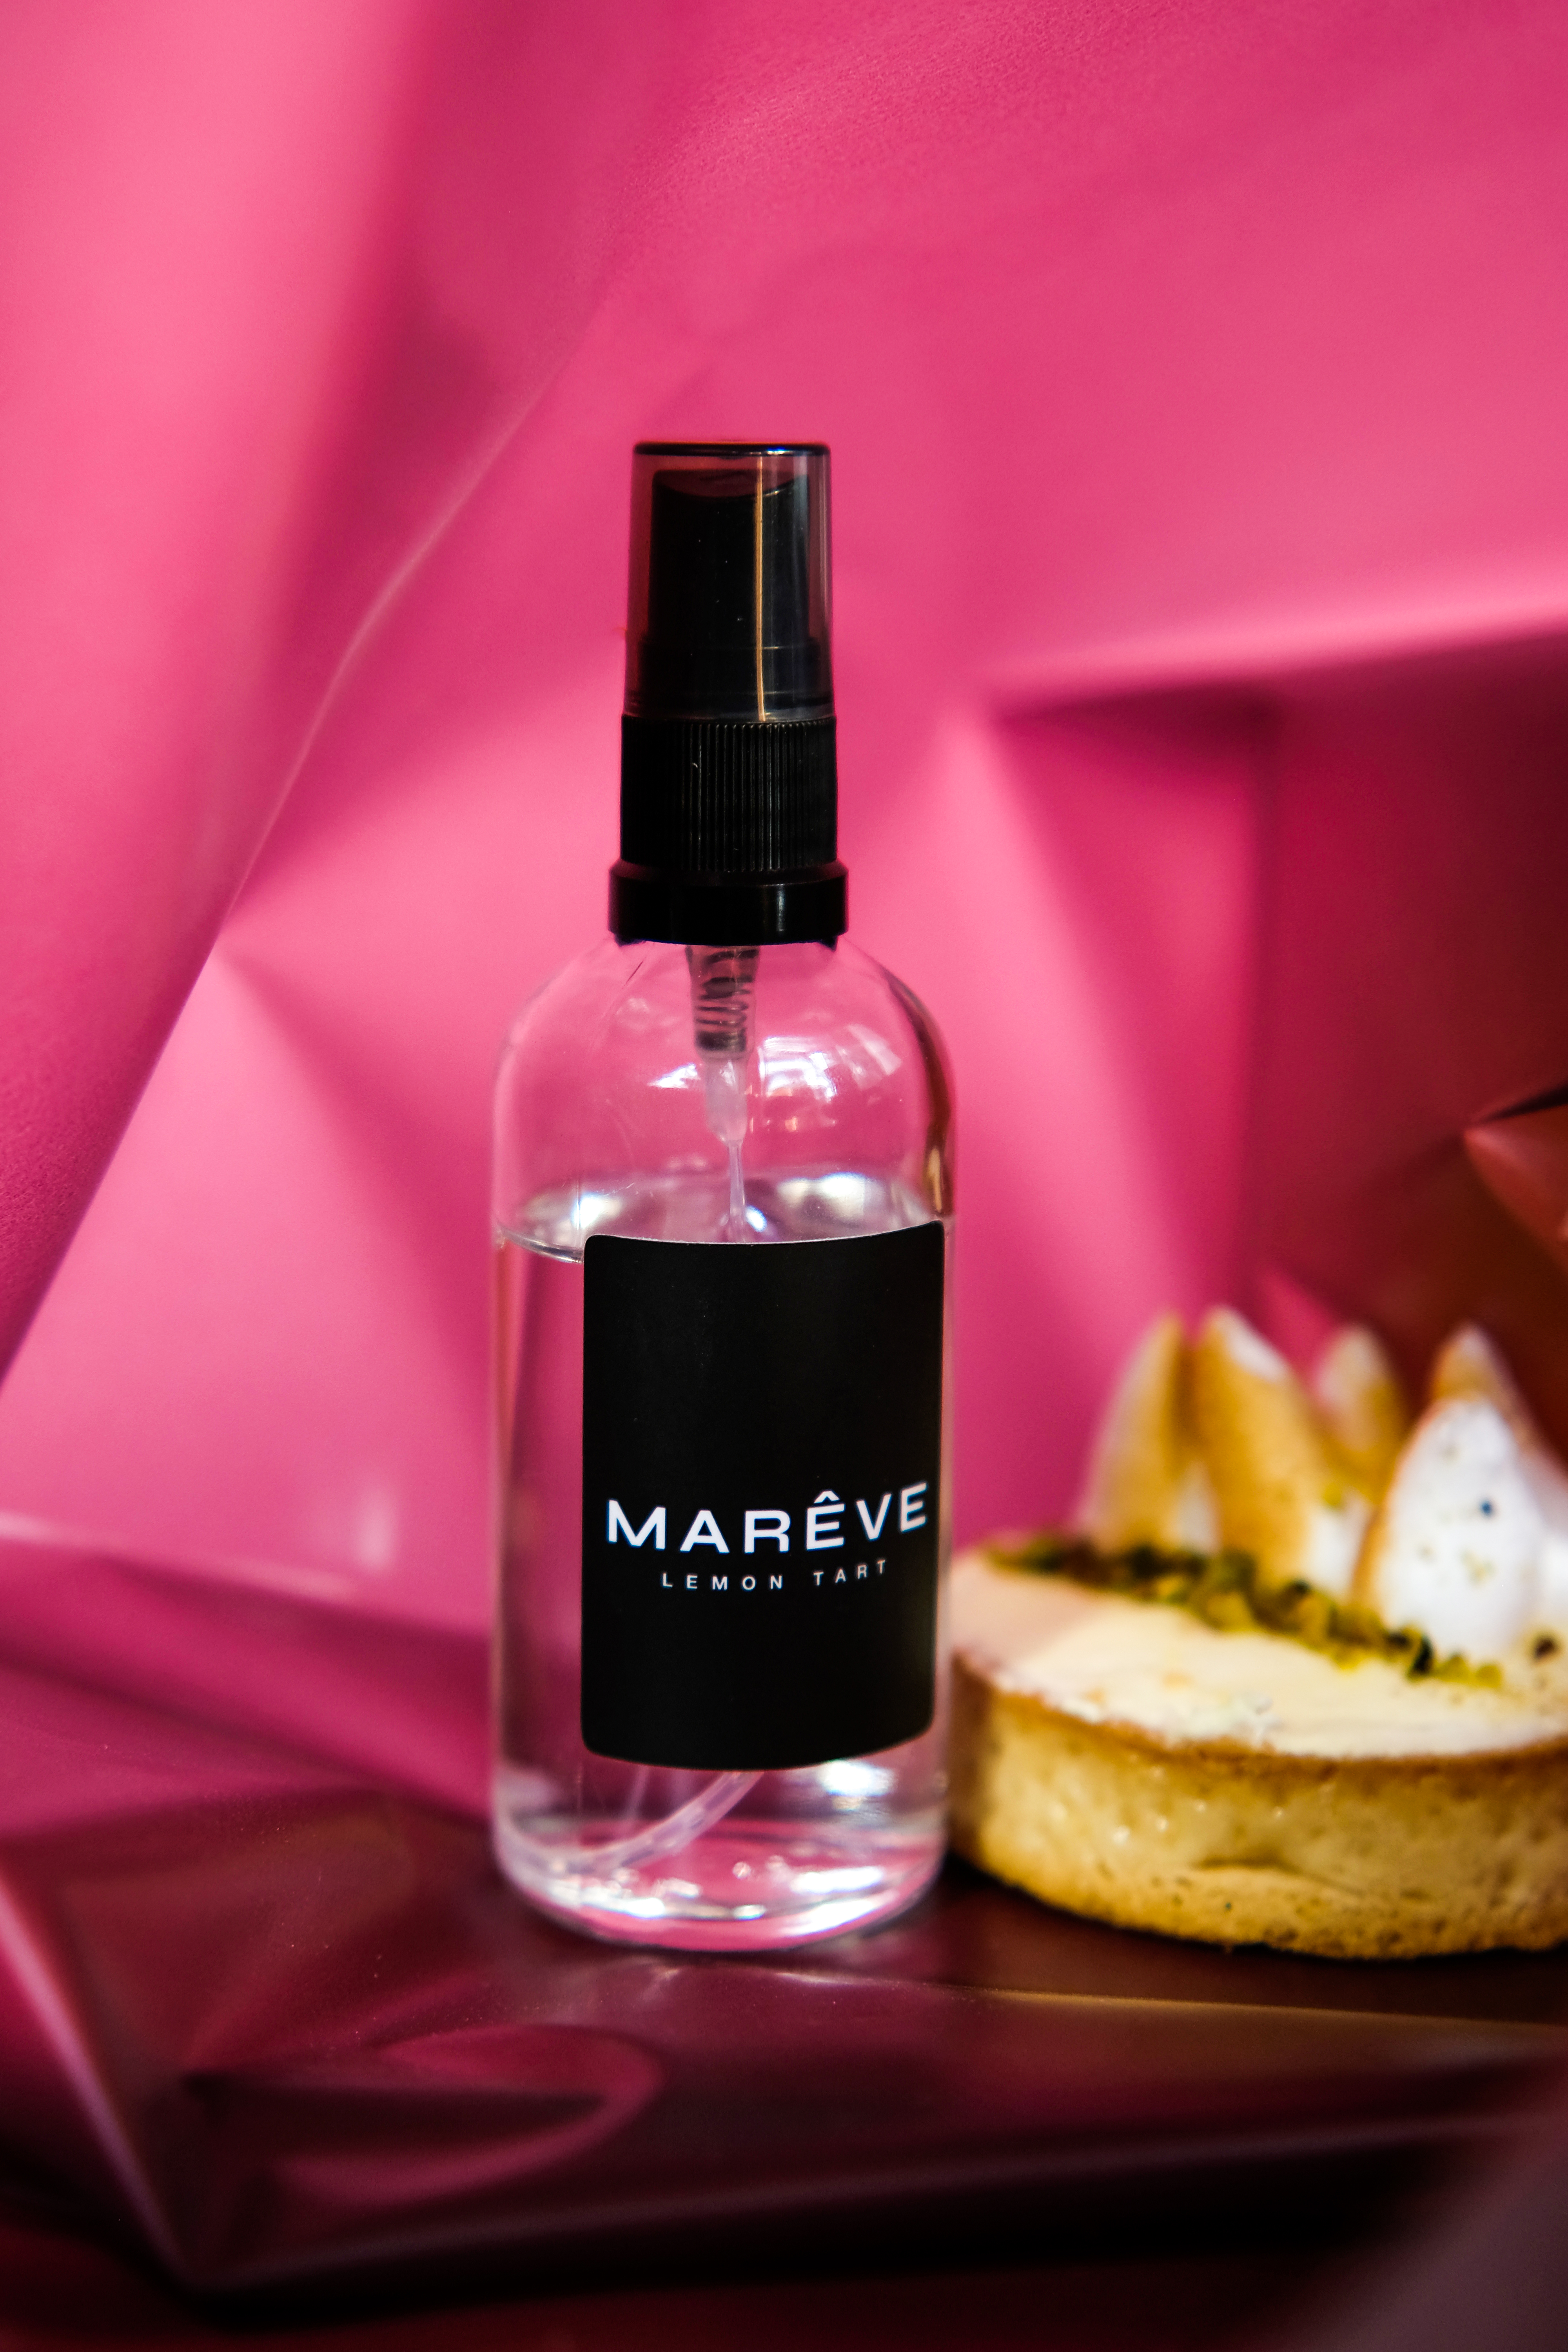 Пошук ідеального аромату для дому від бренда Mareve : Lemon Tart